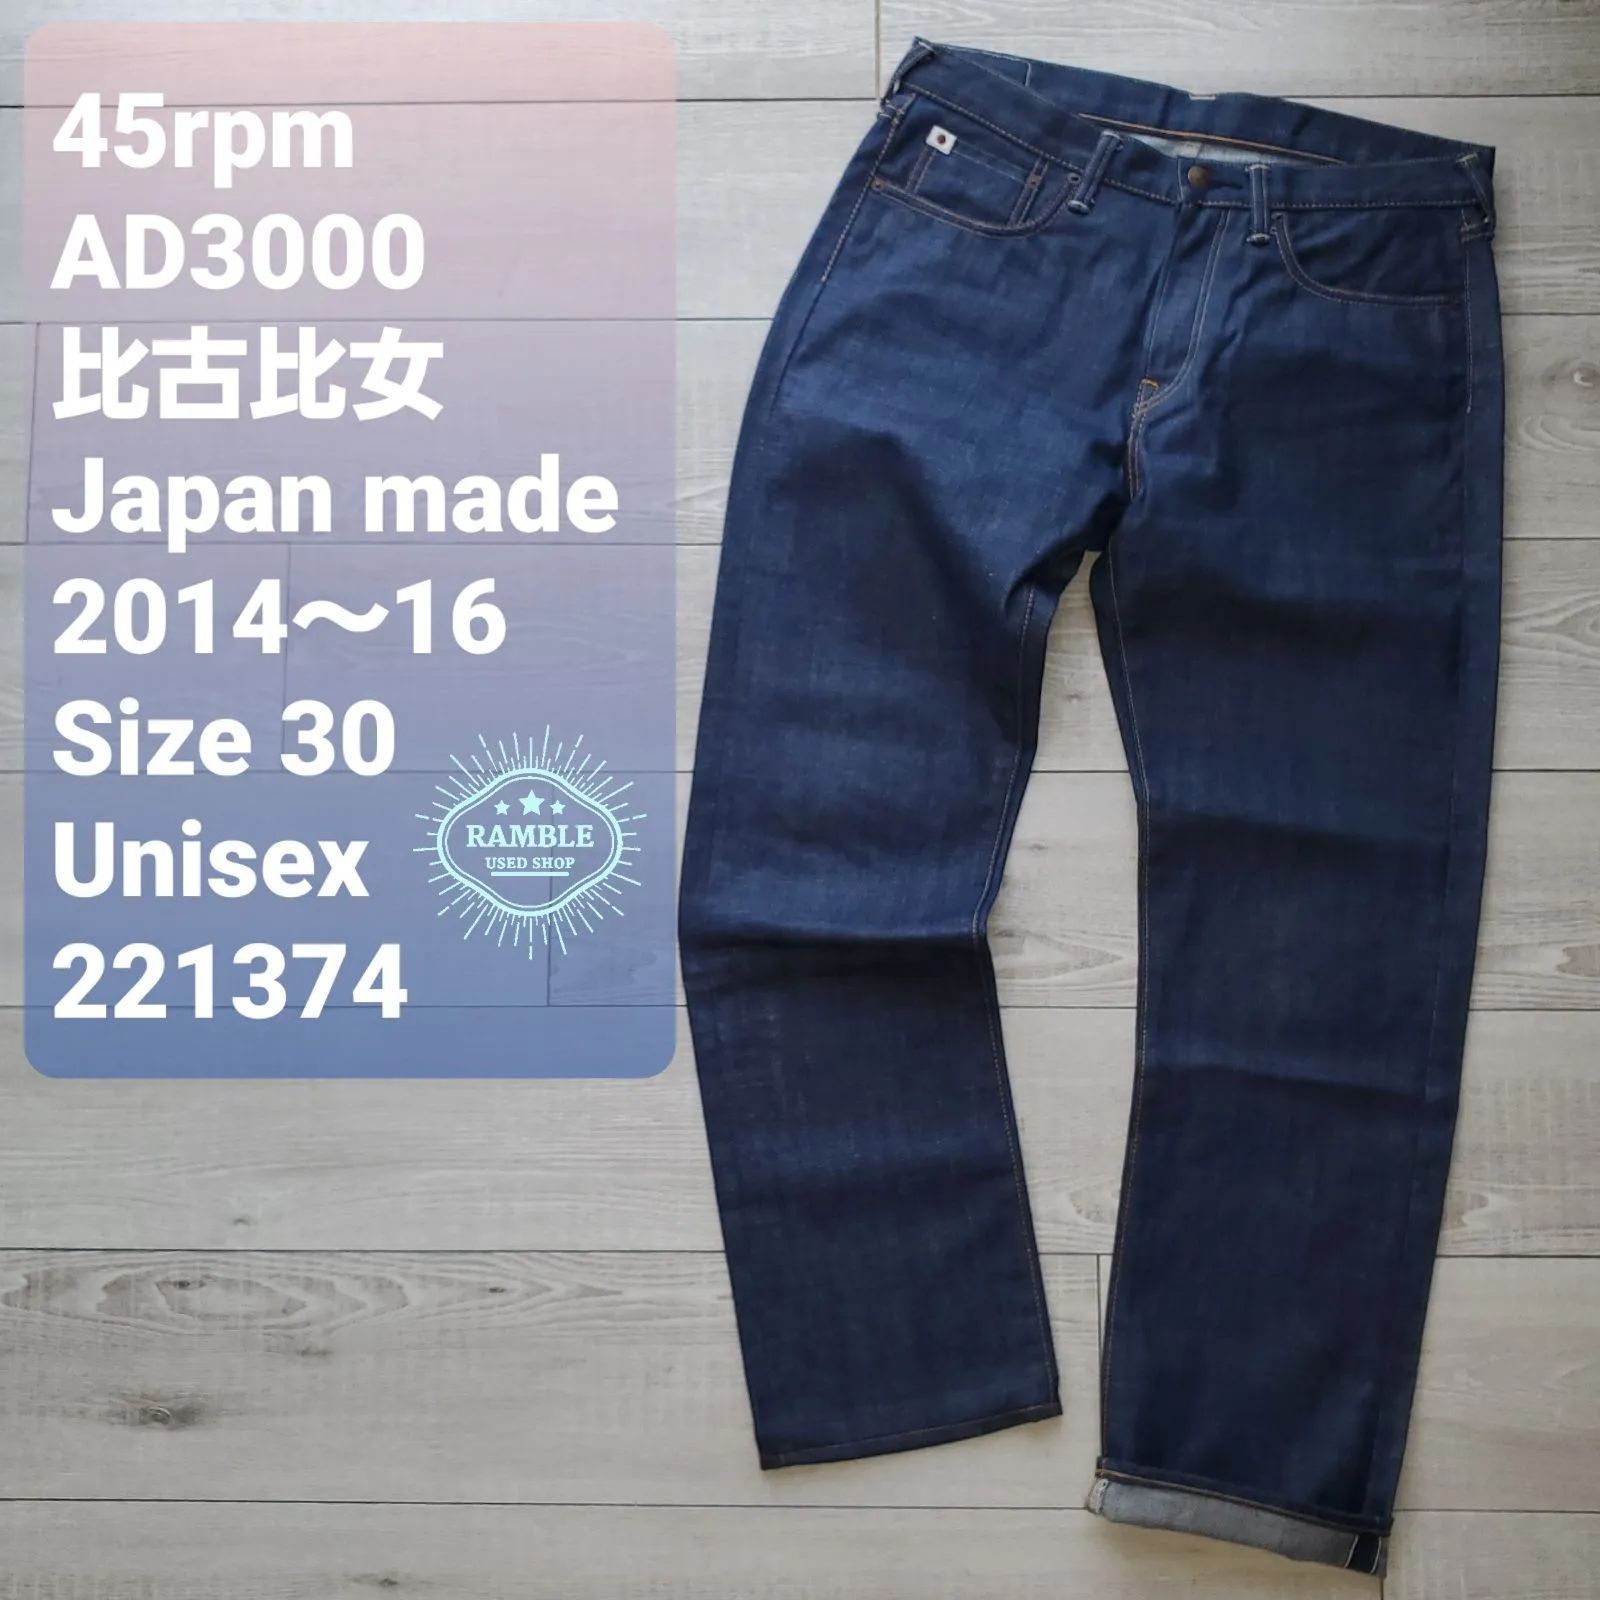 ★高級45rpm【Badou-R】藍染デニムパンツ30日本製PallasPalace